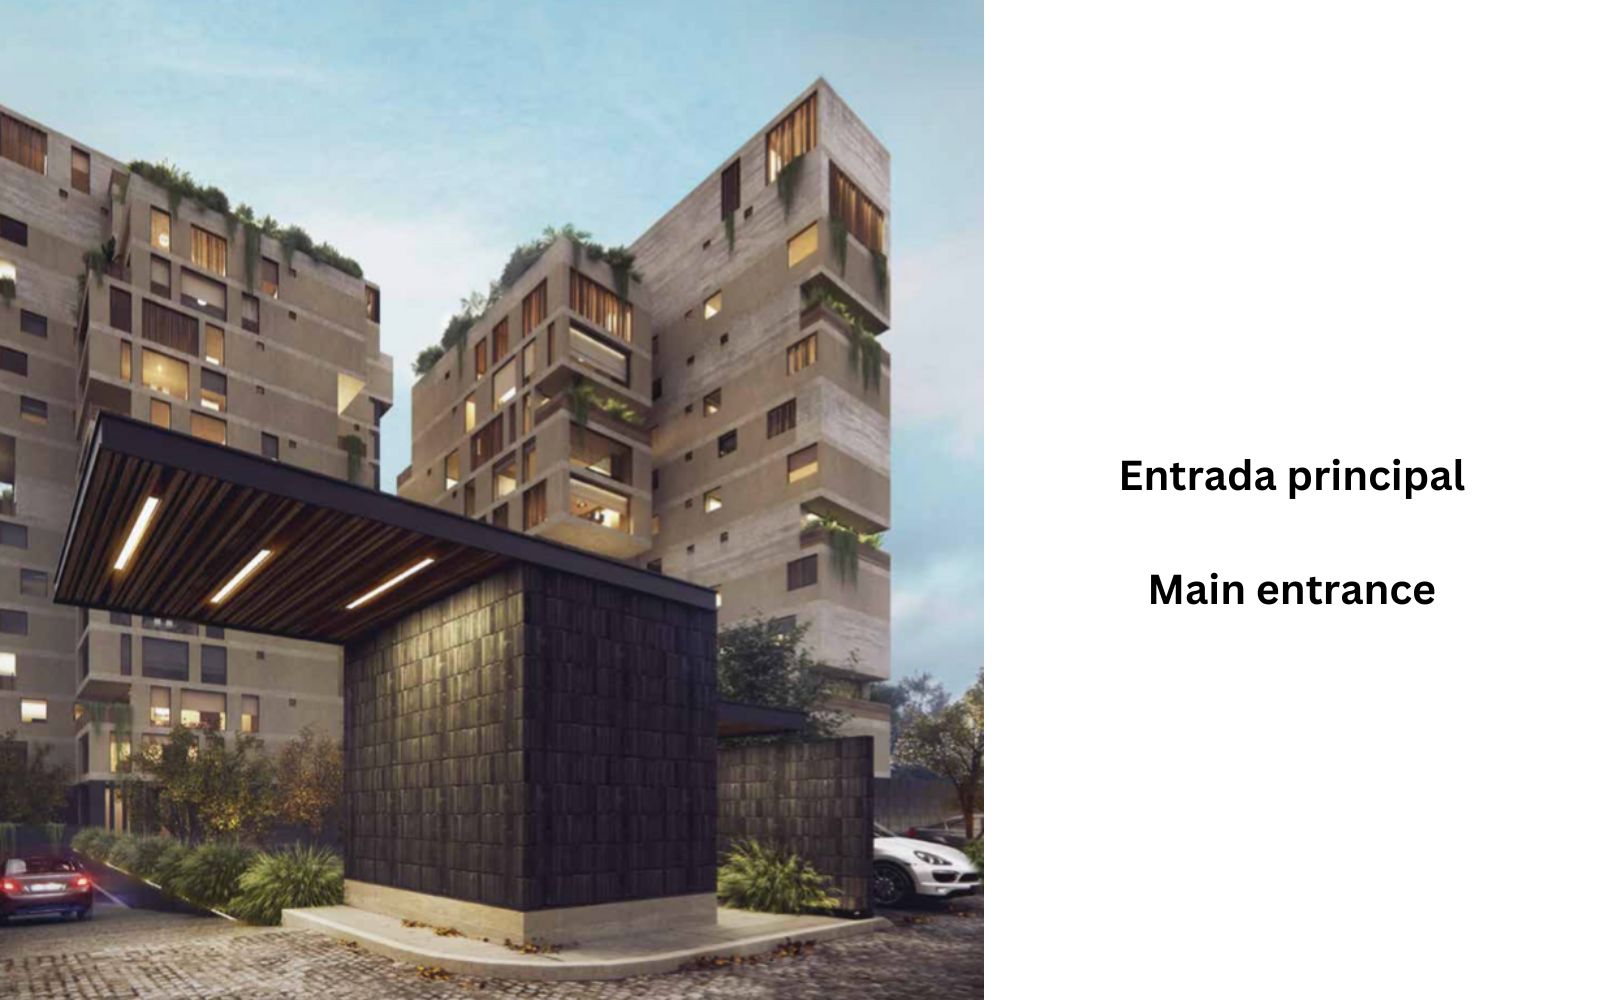 Condominio con jardín, bodega y terraza privada, Gimnasio, Alberca techada,  La Vista, venta, Queretaro.